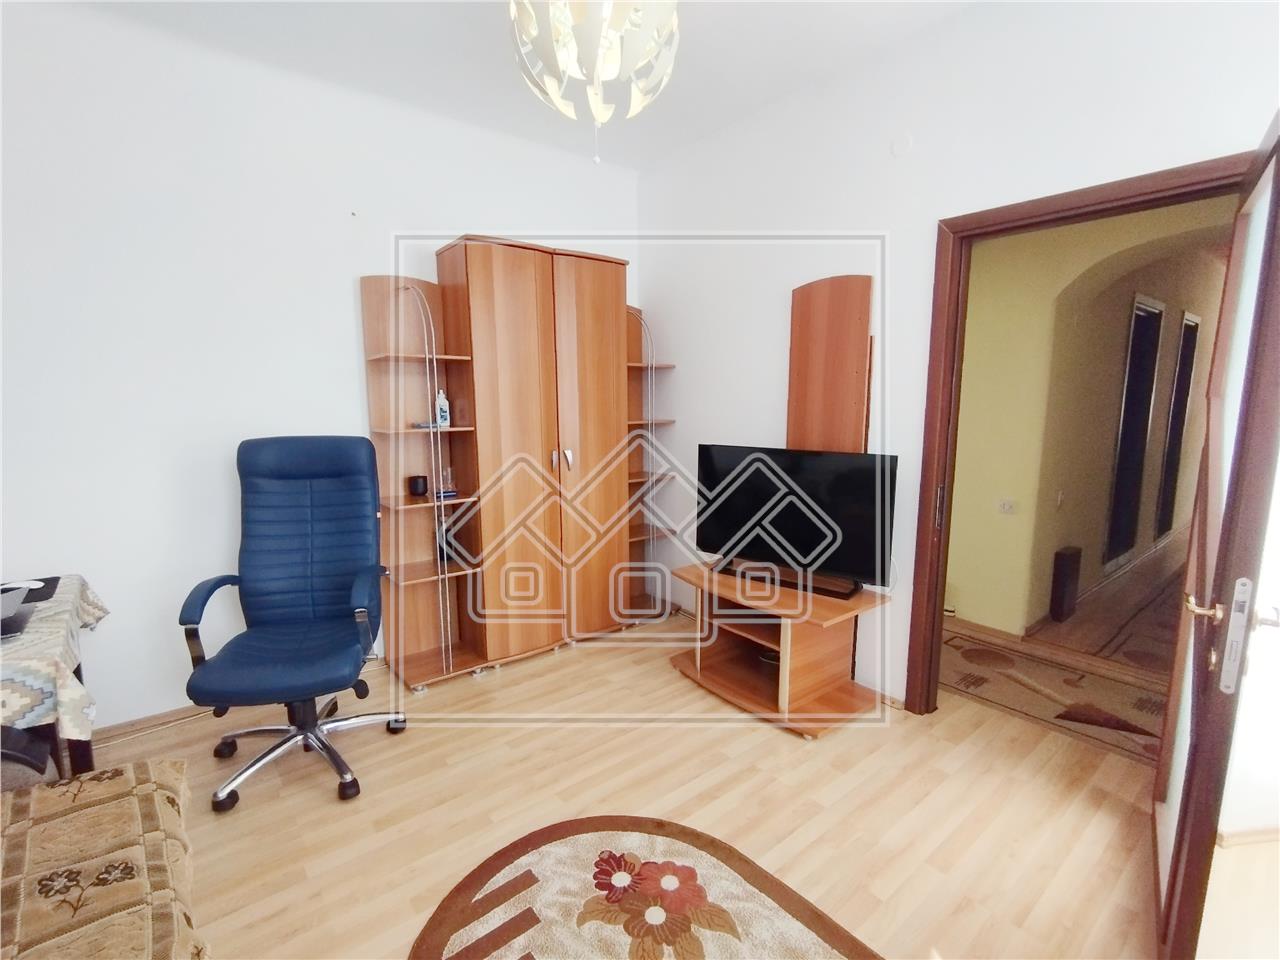 Apartament de vanzare in Sibiu - 3 camere - garaj - Zona Centrala